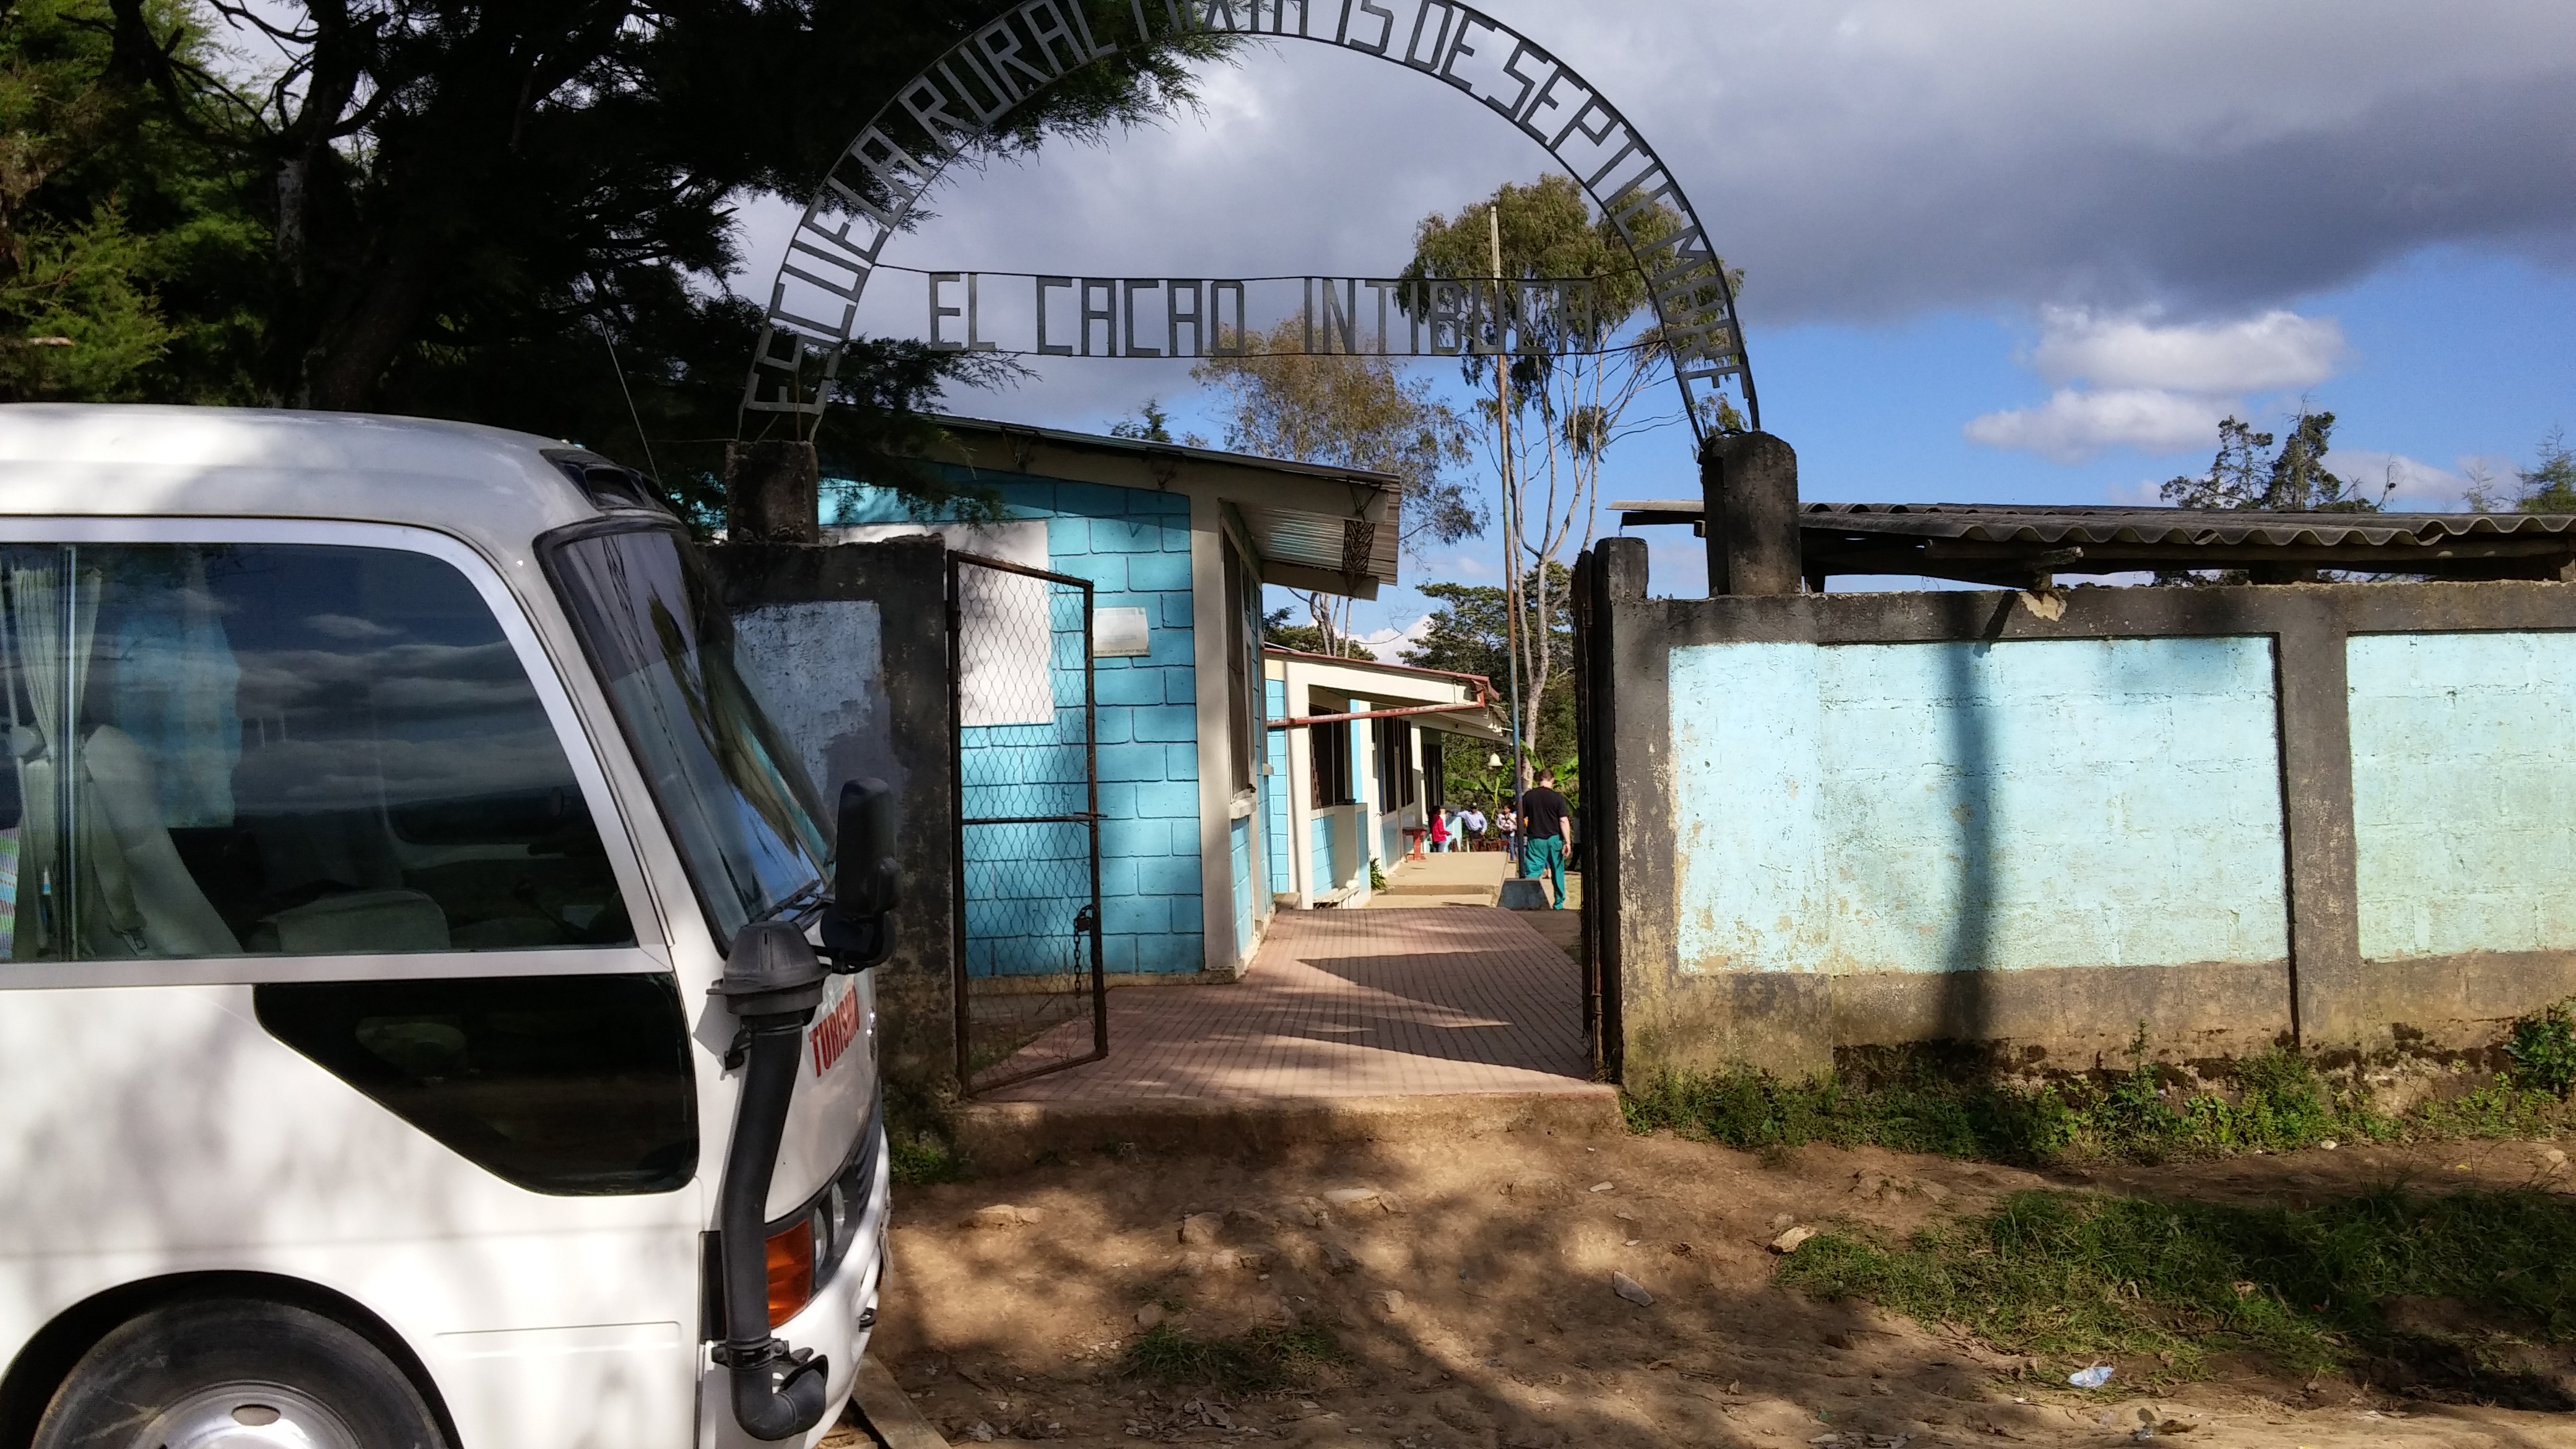 Entrance to the school in El Cacao